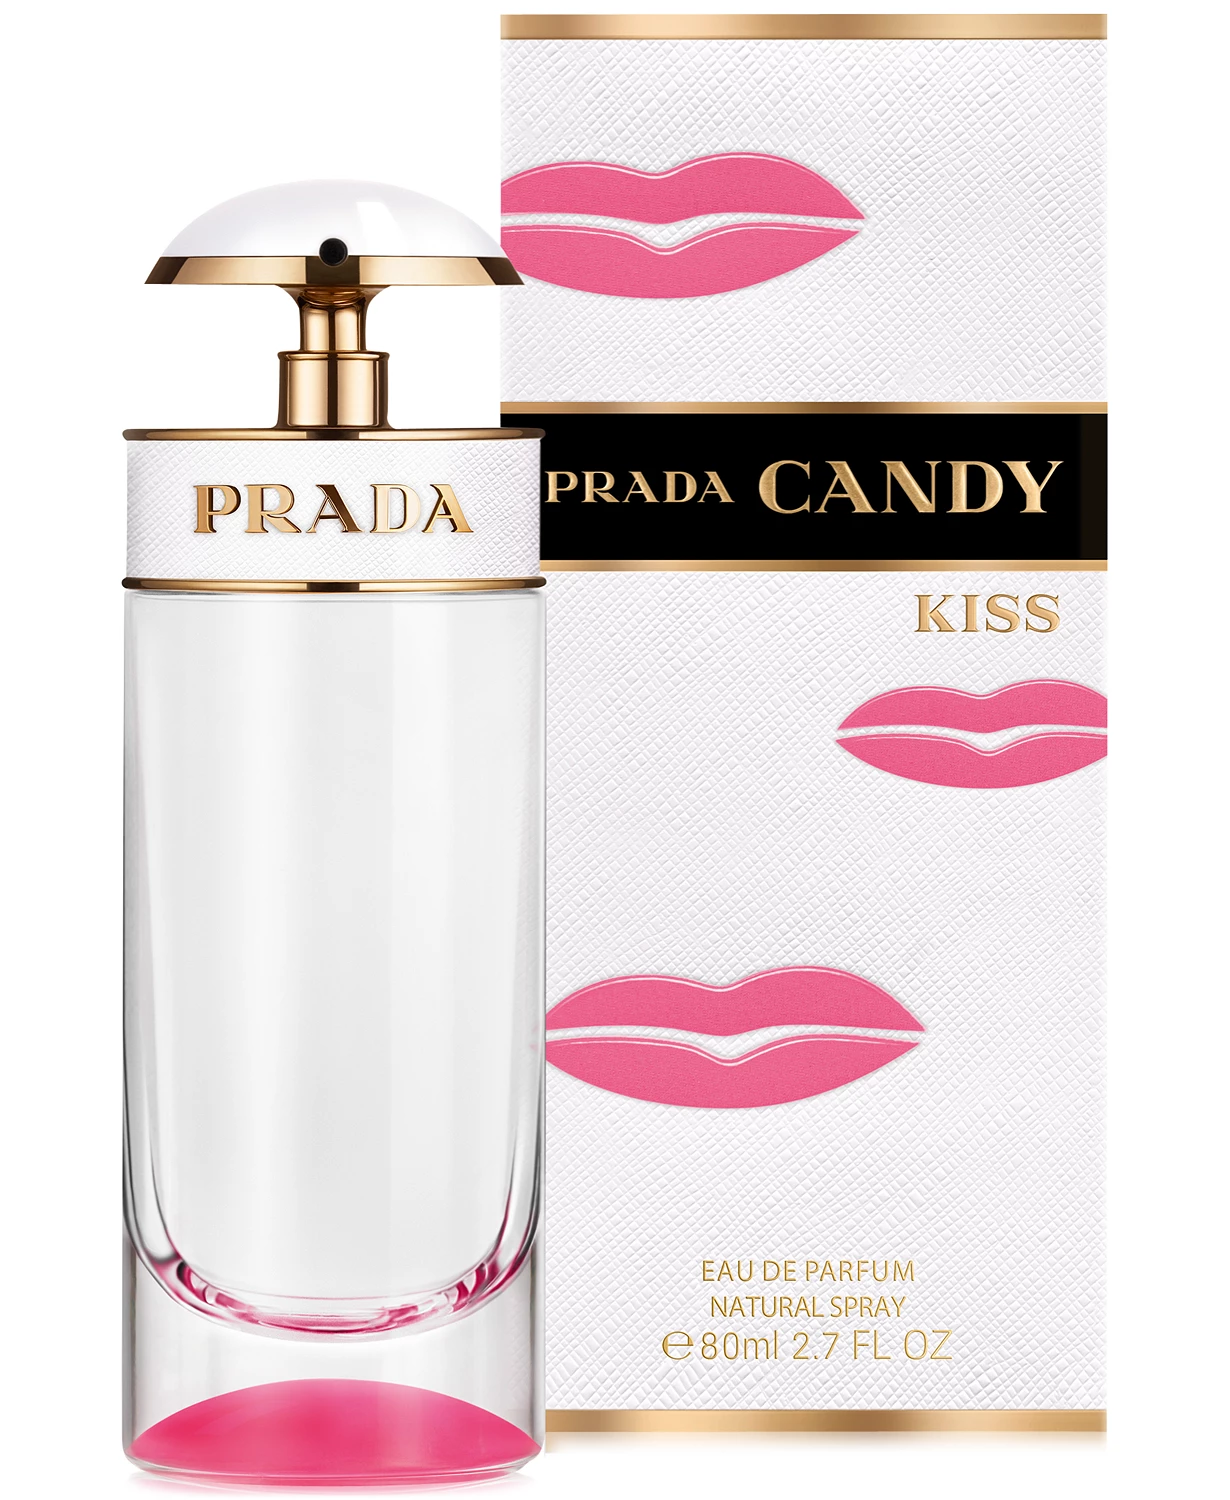 Prada: Candy Kiss Eau de Parfum Spray, 2.7 oz $63.00